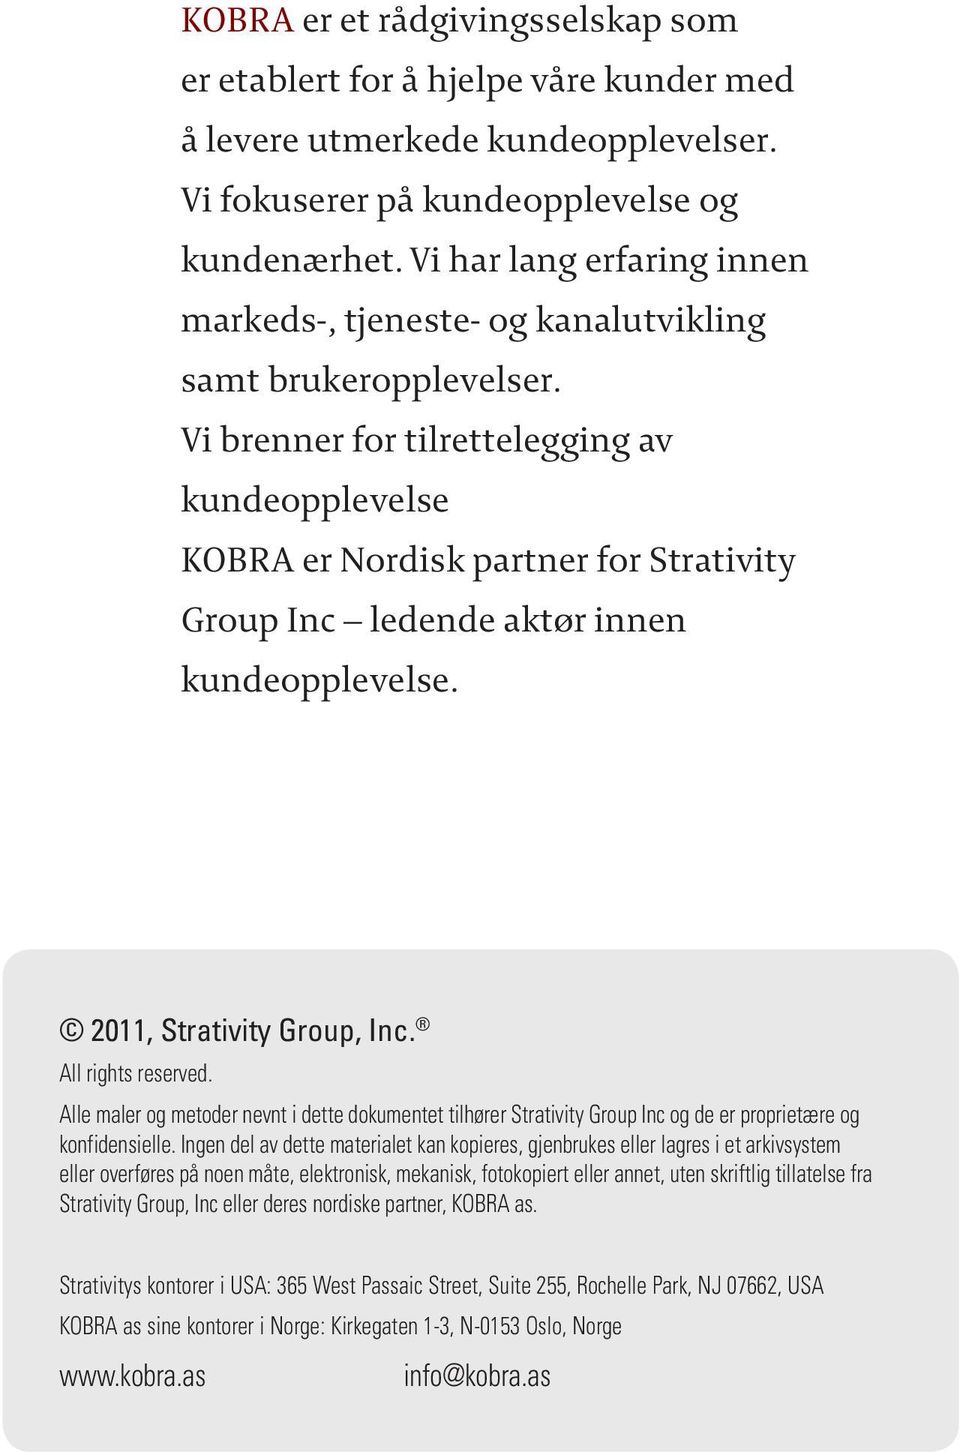 Vi brenner for tilrettelegging av kundeopplevelse KOBRA er Nordisk partner for Strativity Group Inc ledende aktør innen kundeopplevelse. 2011, Strativity Group, Inc. All rights reserved.